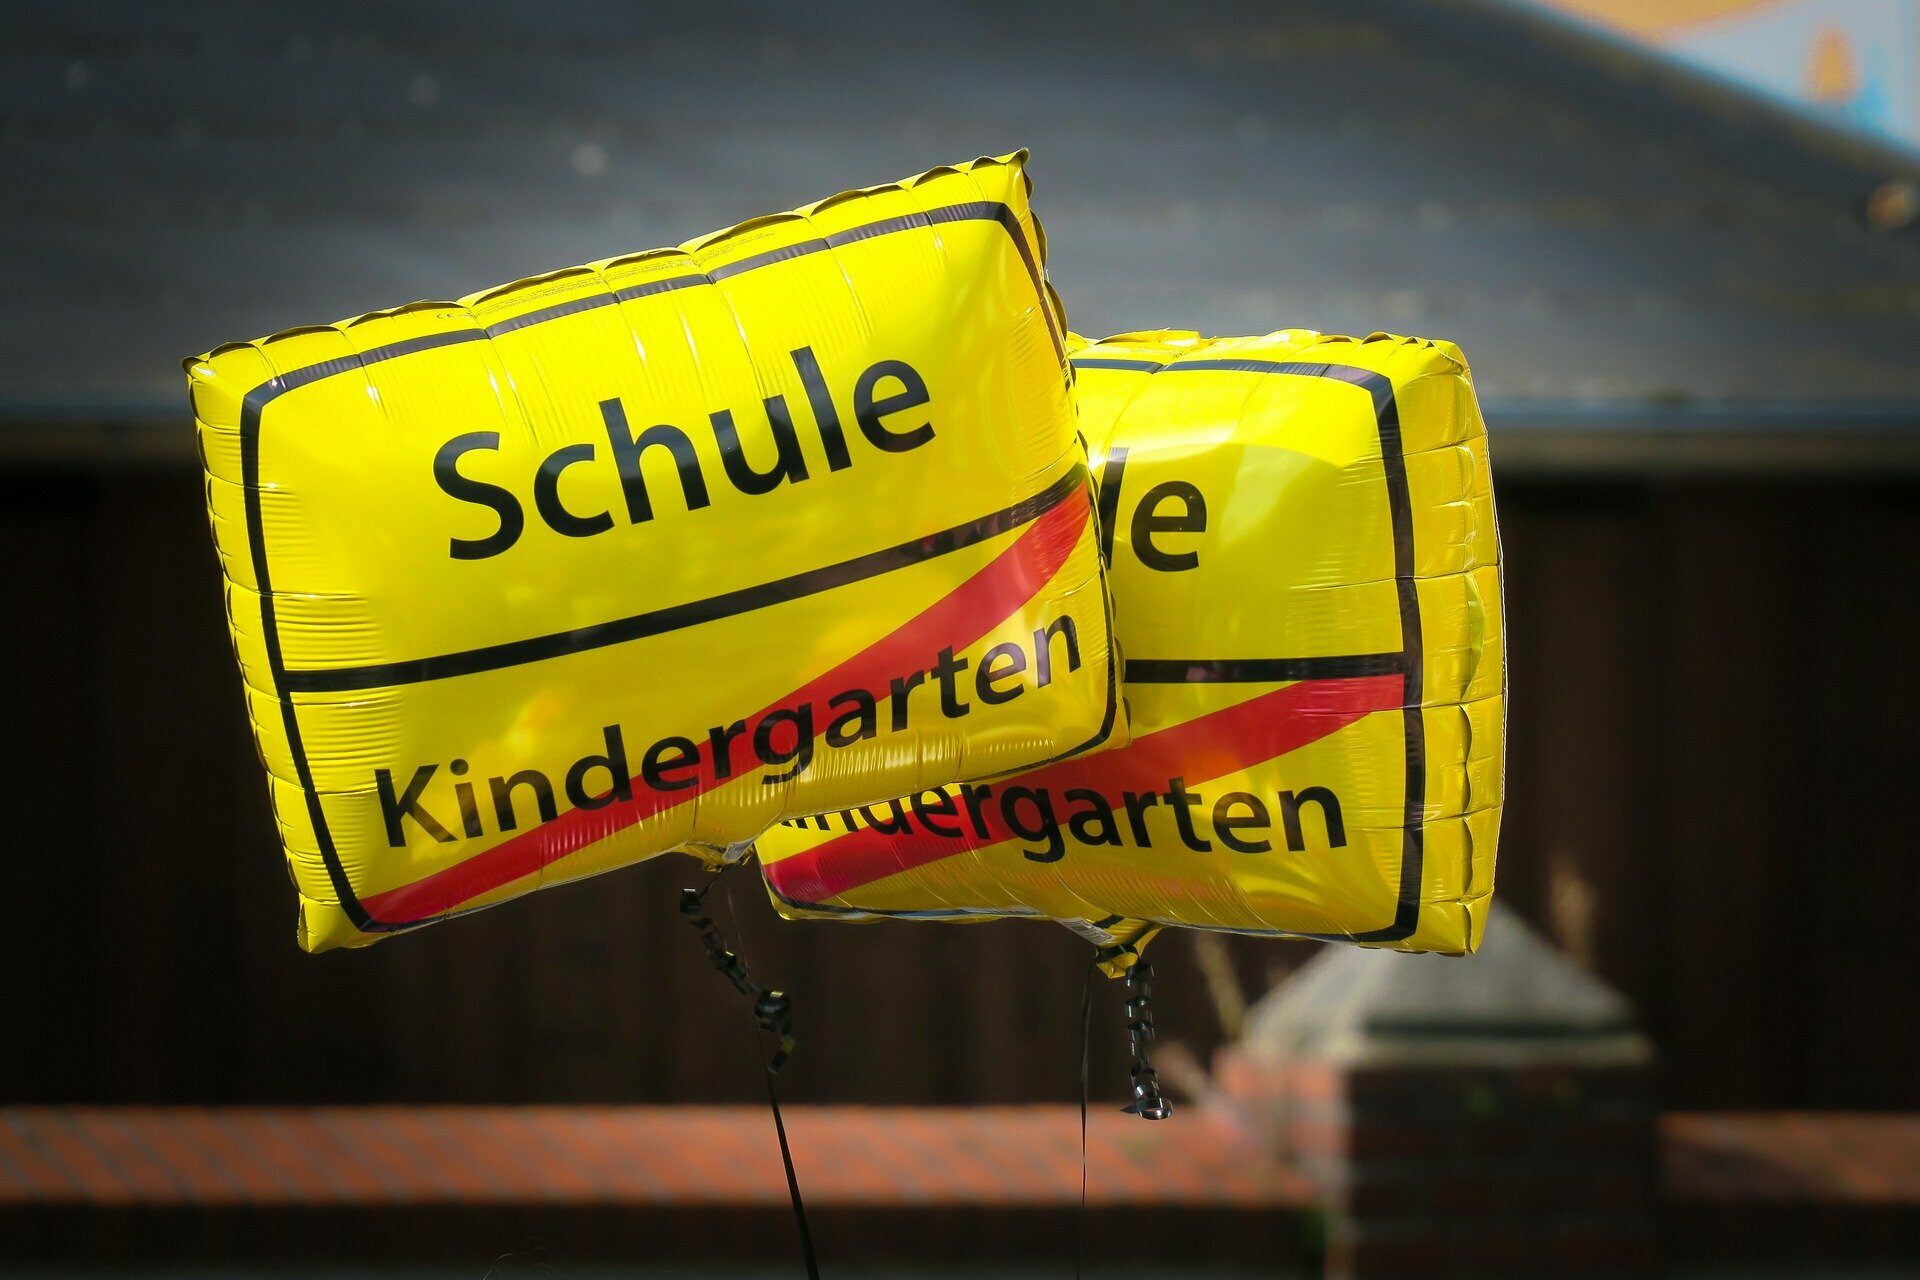 Gelbe Luftballons mit der Aufschrift Schule und dem durchgestrichenen Titel "Kindergarten" als Symbol für die Einschulung.